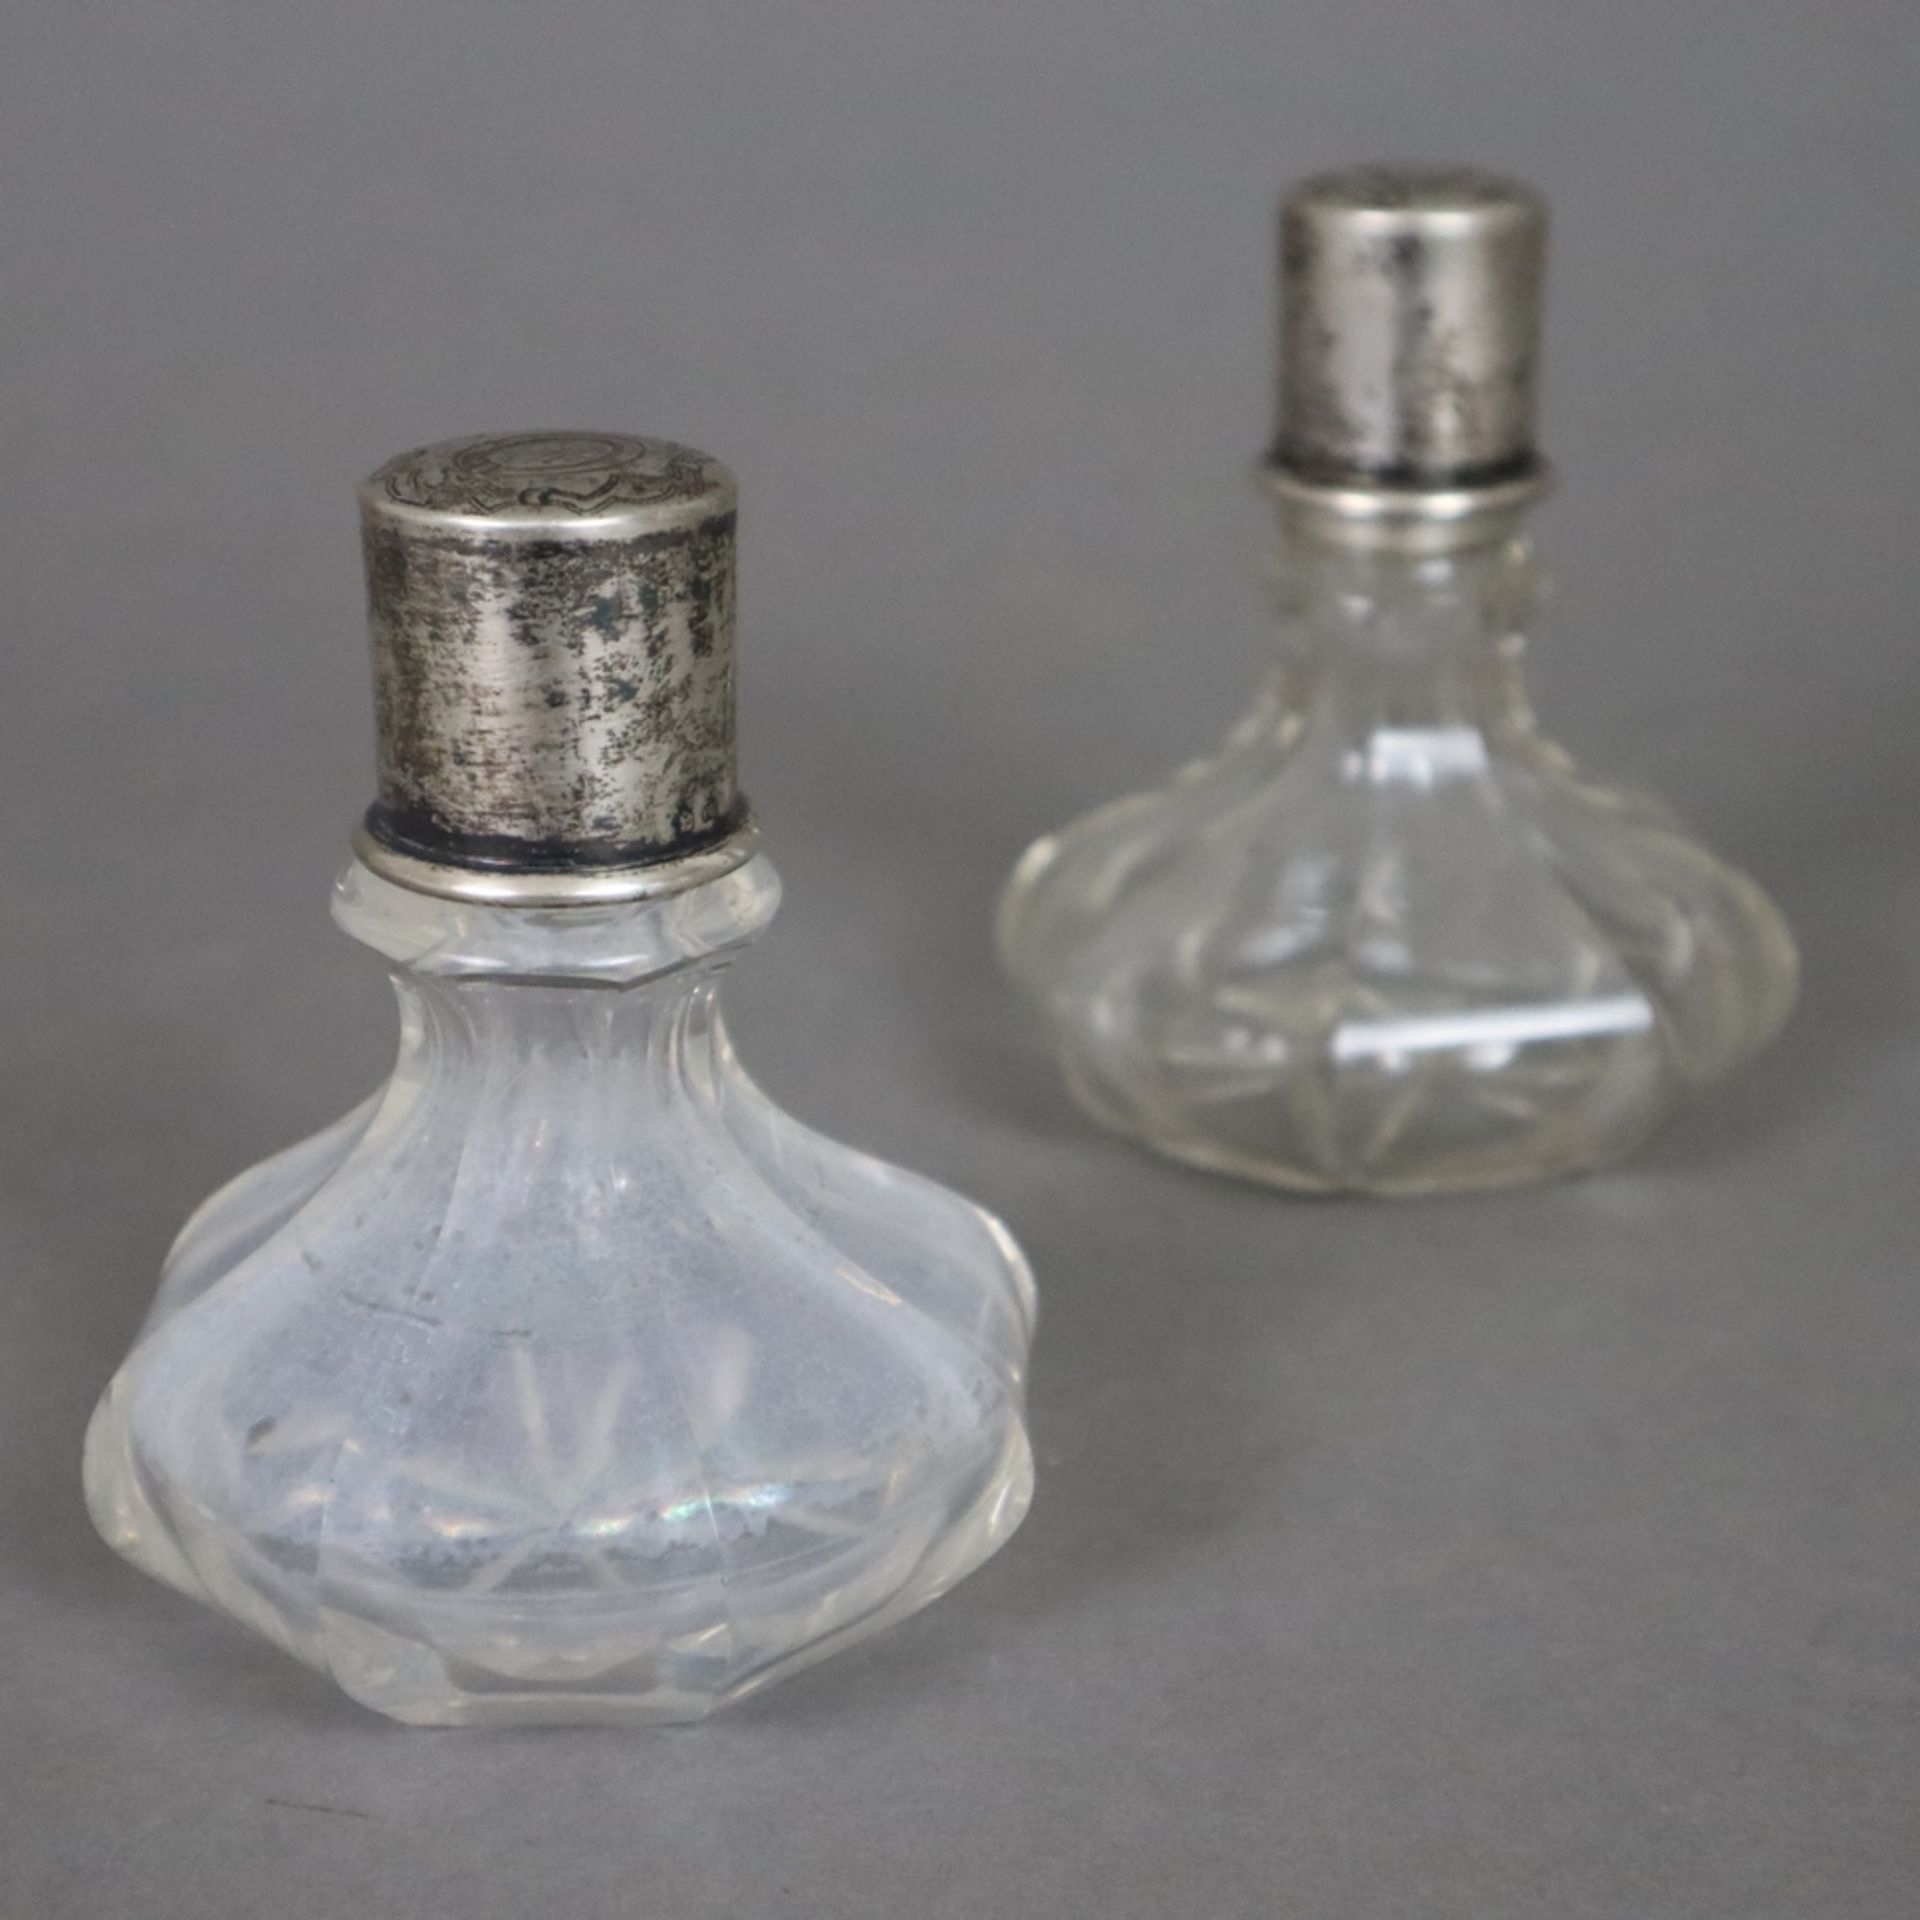 Drei Glasflakons mit Silbermontur - 2x Parfumflakons, wohl Österreich, farbloses Glas, achtfach fac - Bild 5 aus 10